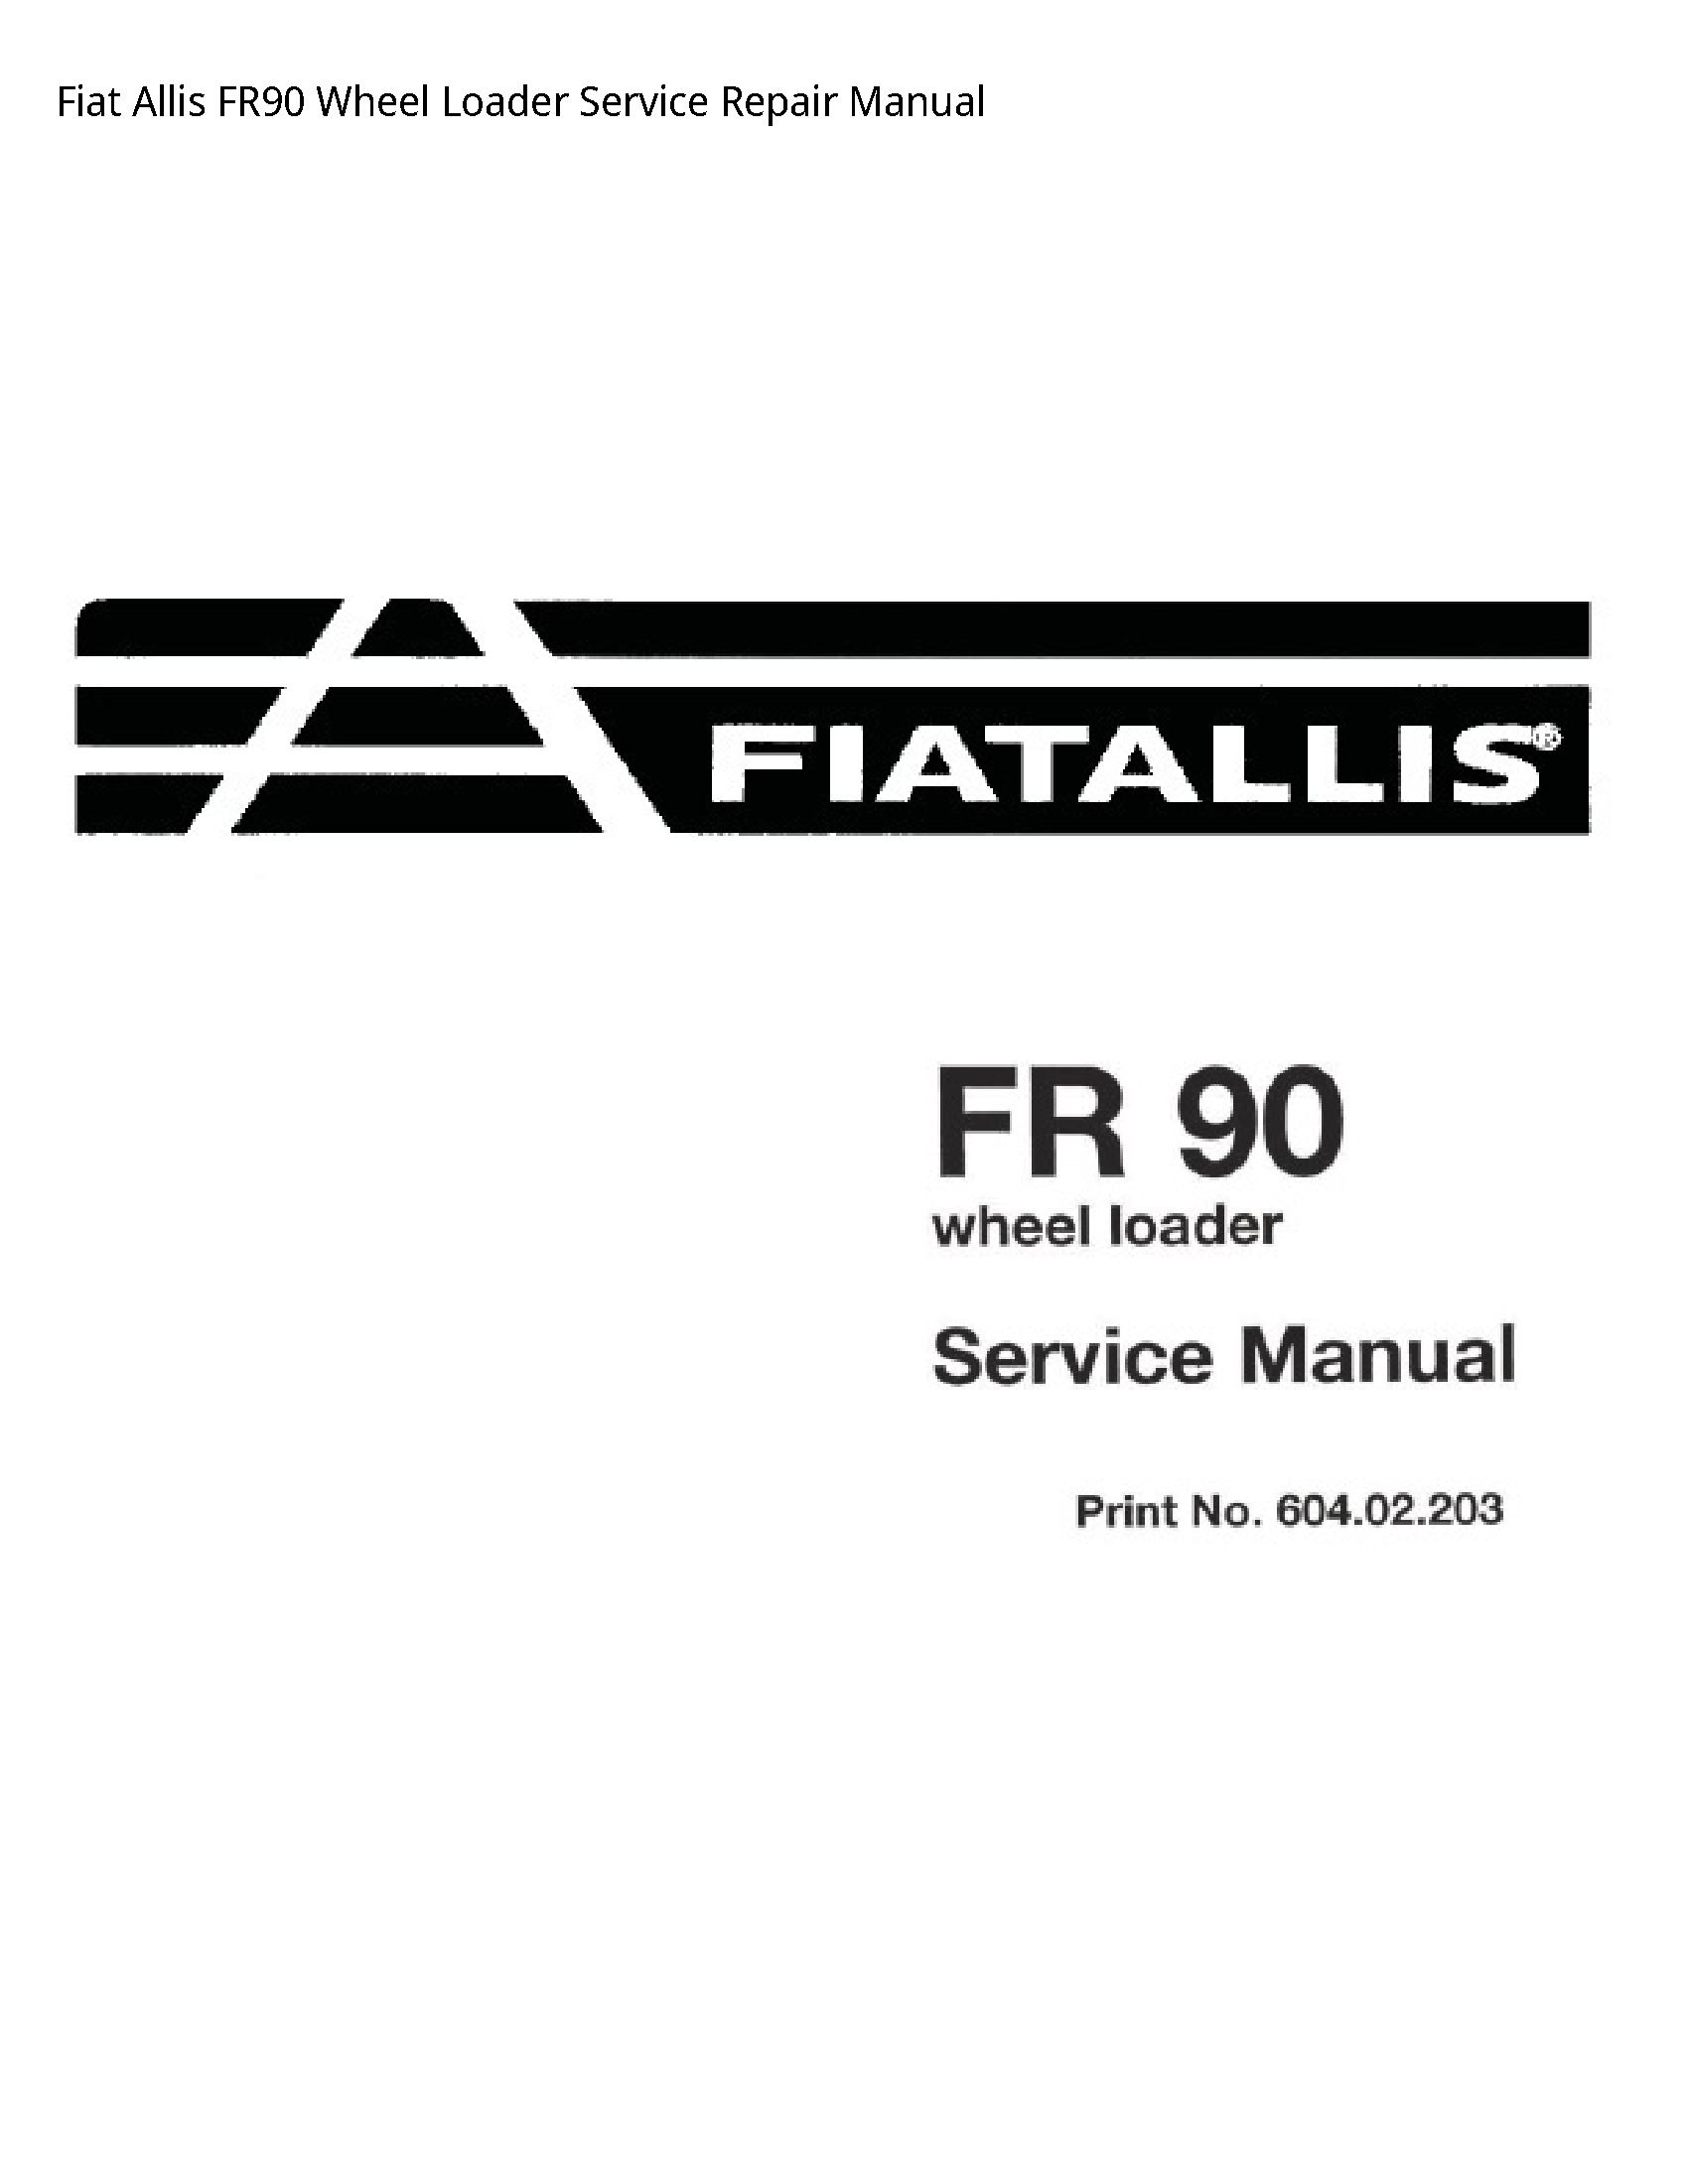 Fiat Allis FR90 Wheel Loader manual